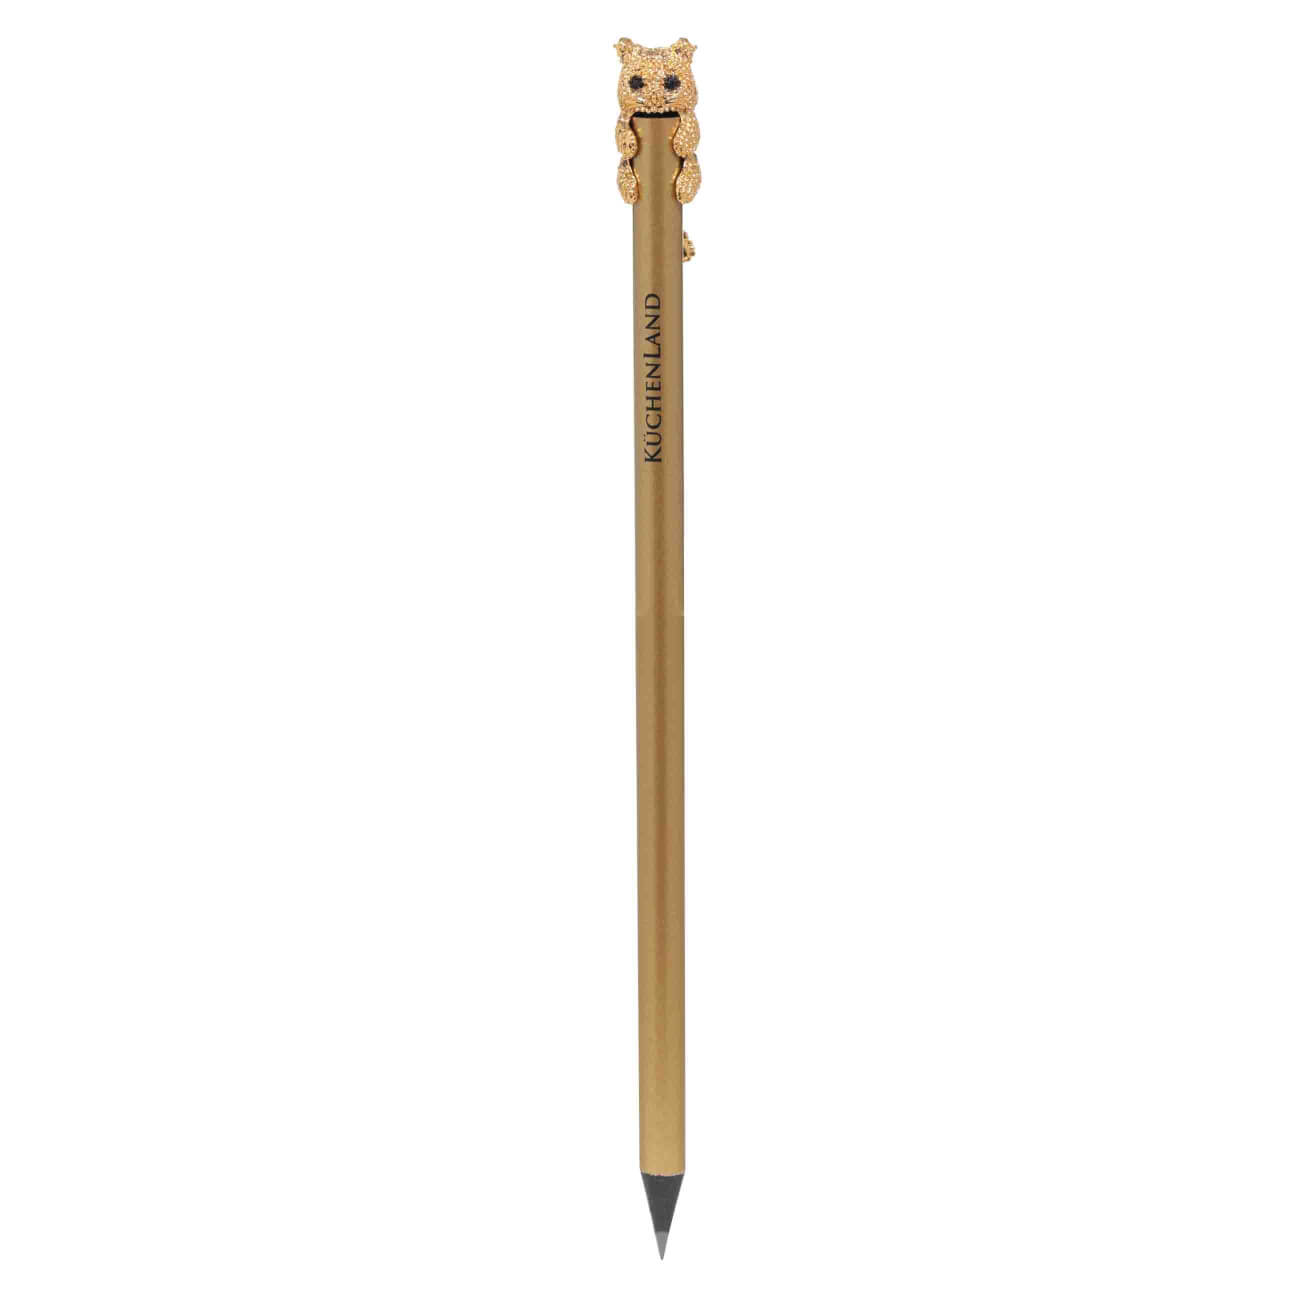 Карандаш, 18 см, чернографитный, с фигуркой, золотистый, Кот, Draw карандаш 18 см чернографитный золотистый draw sparcle